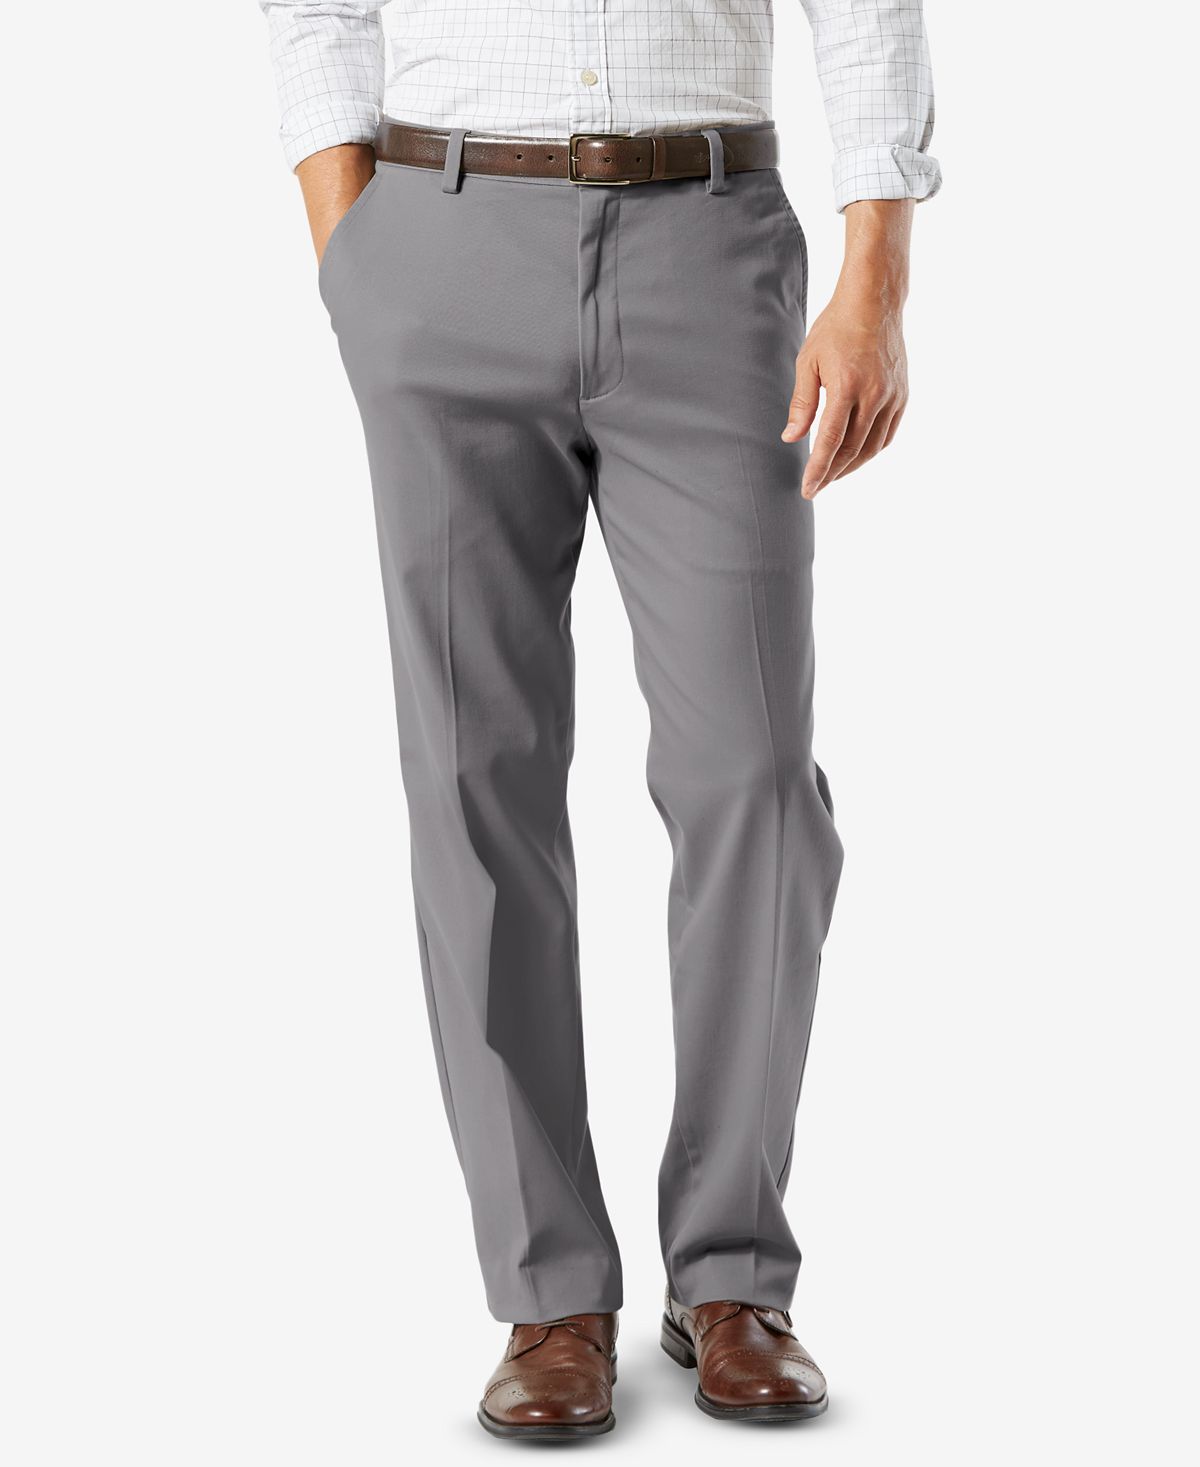 Мужские брюки easy classic fit цвета хаки стрейч Dockers, мульти